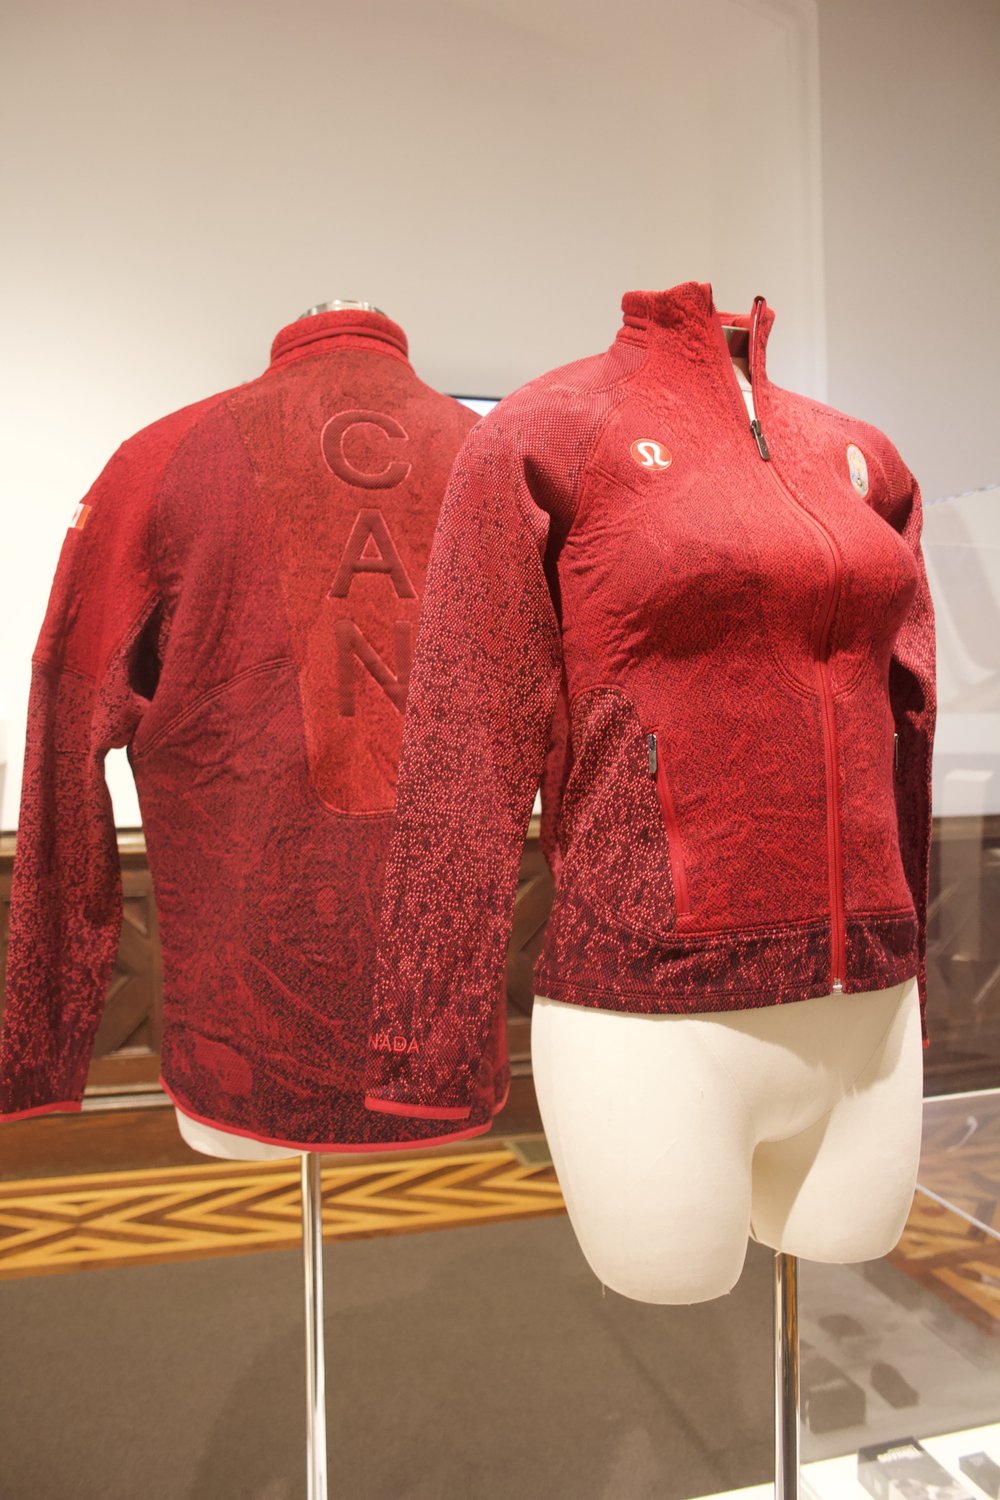 lululemon Team Canada Beijing 2022 Olympic Podium Jackets